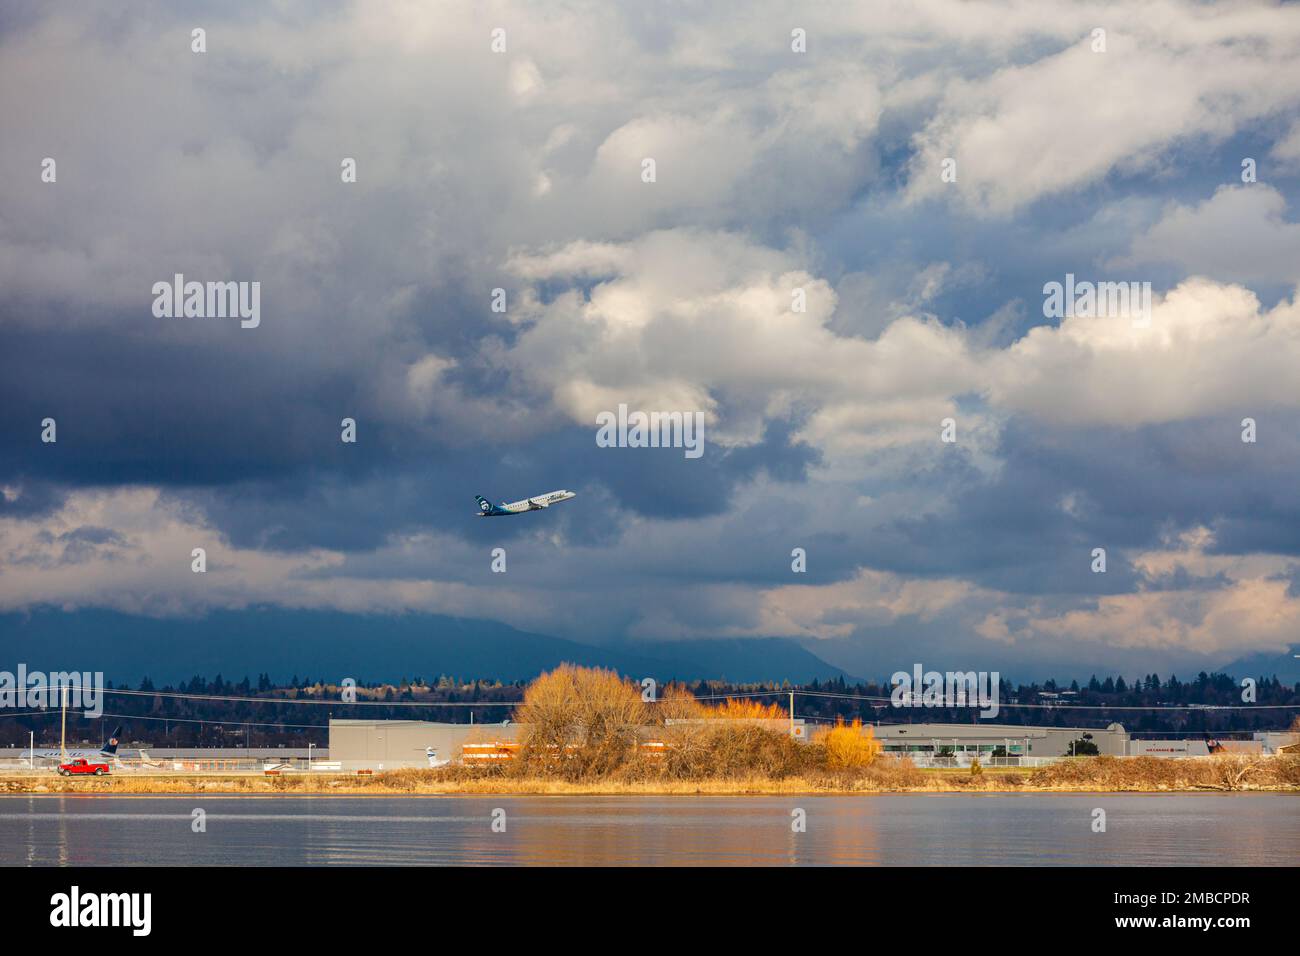 Un avion d'Alaska Airlines au départ de l'aéroport de Vancouver sous un ciel menaçant Banque D'Images